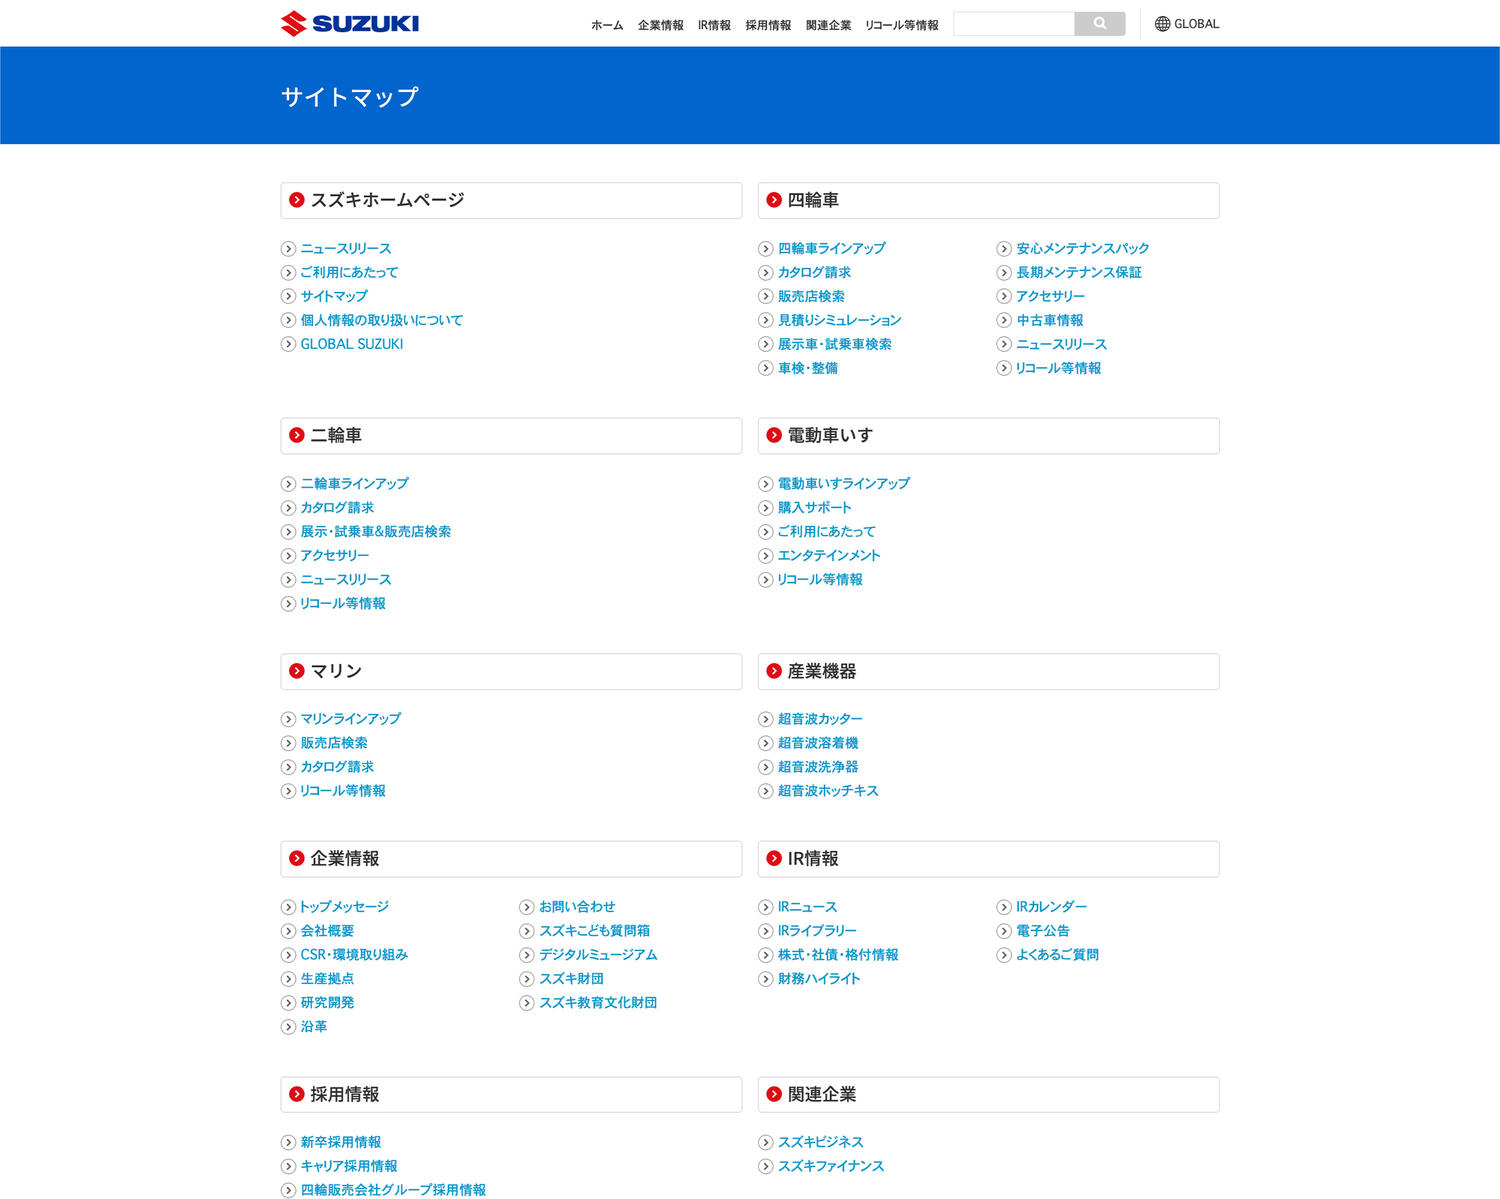 SUZUKI サイトマップ